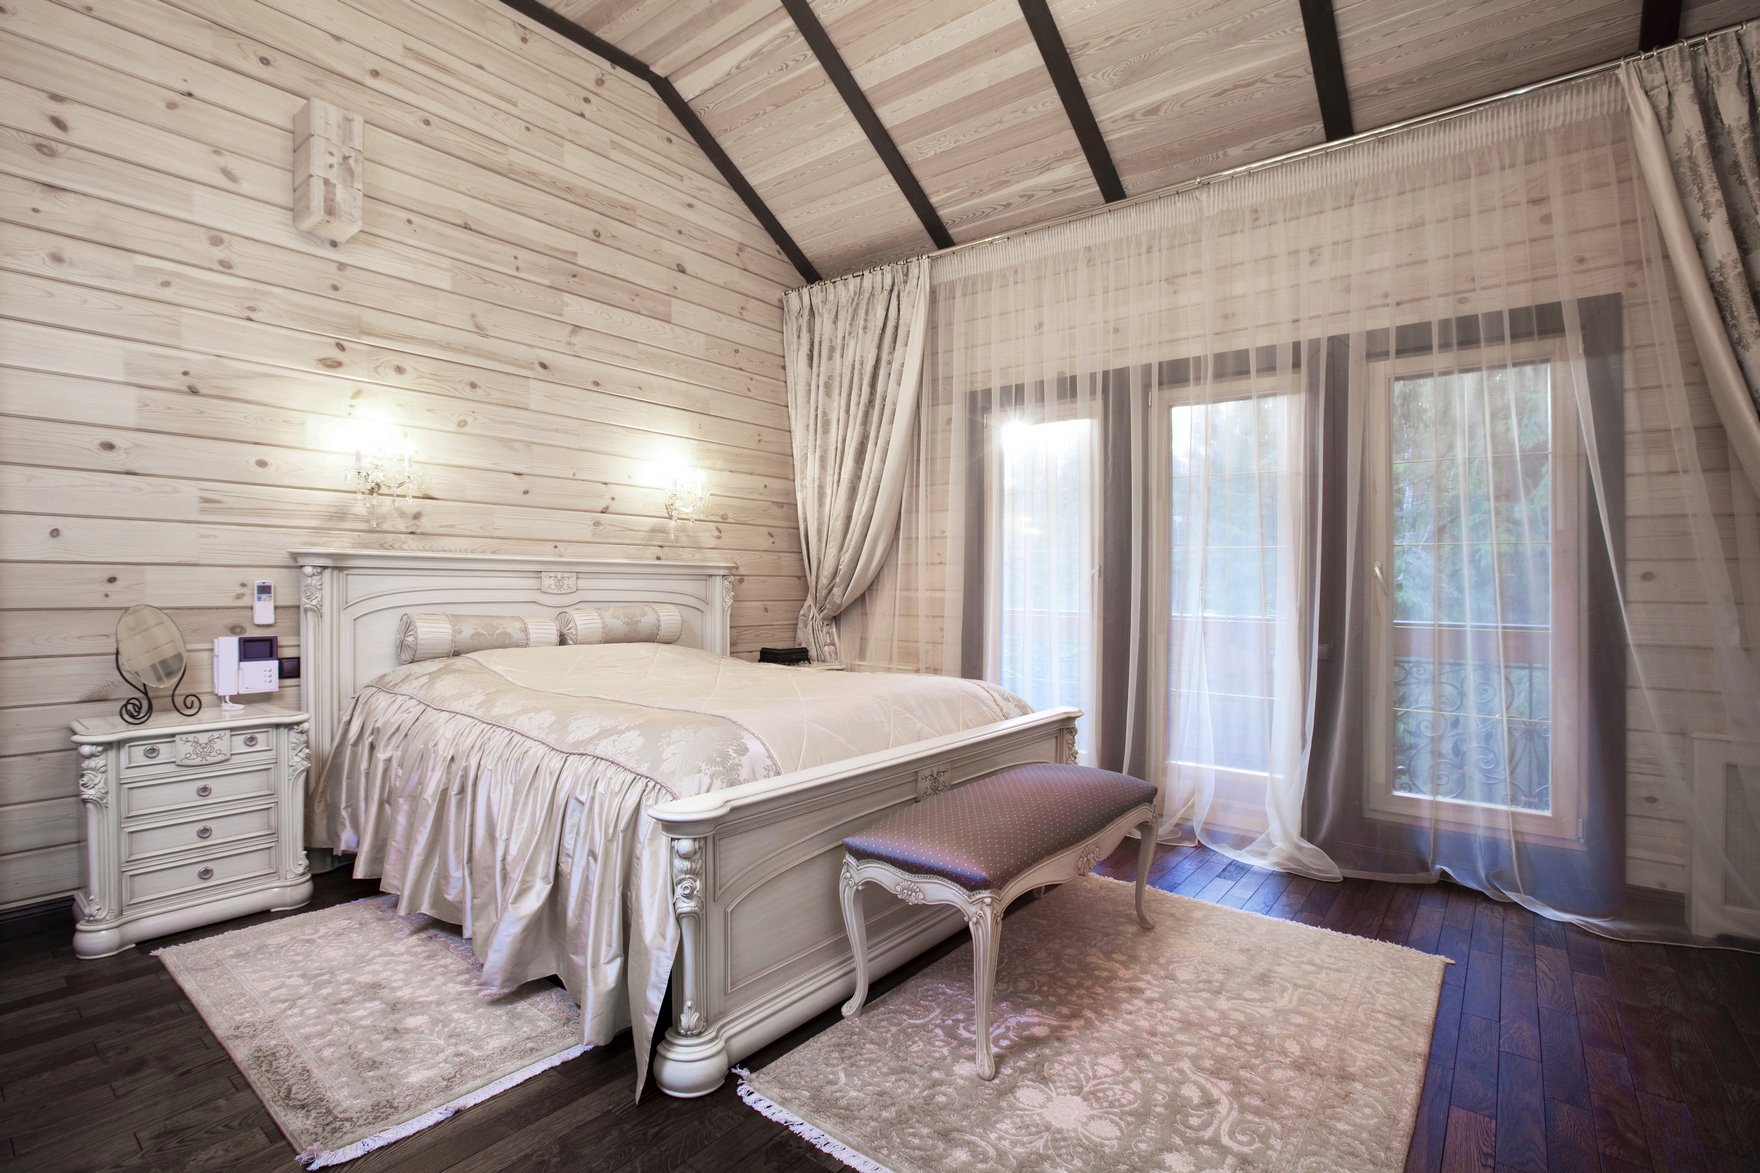 шторы в спальне деревянного дома фото